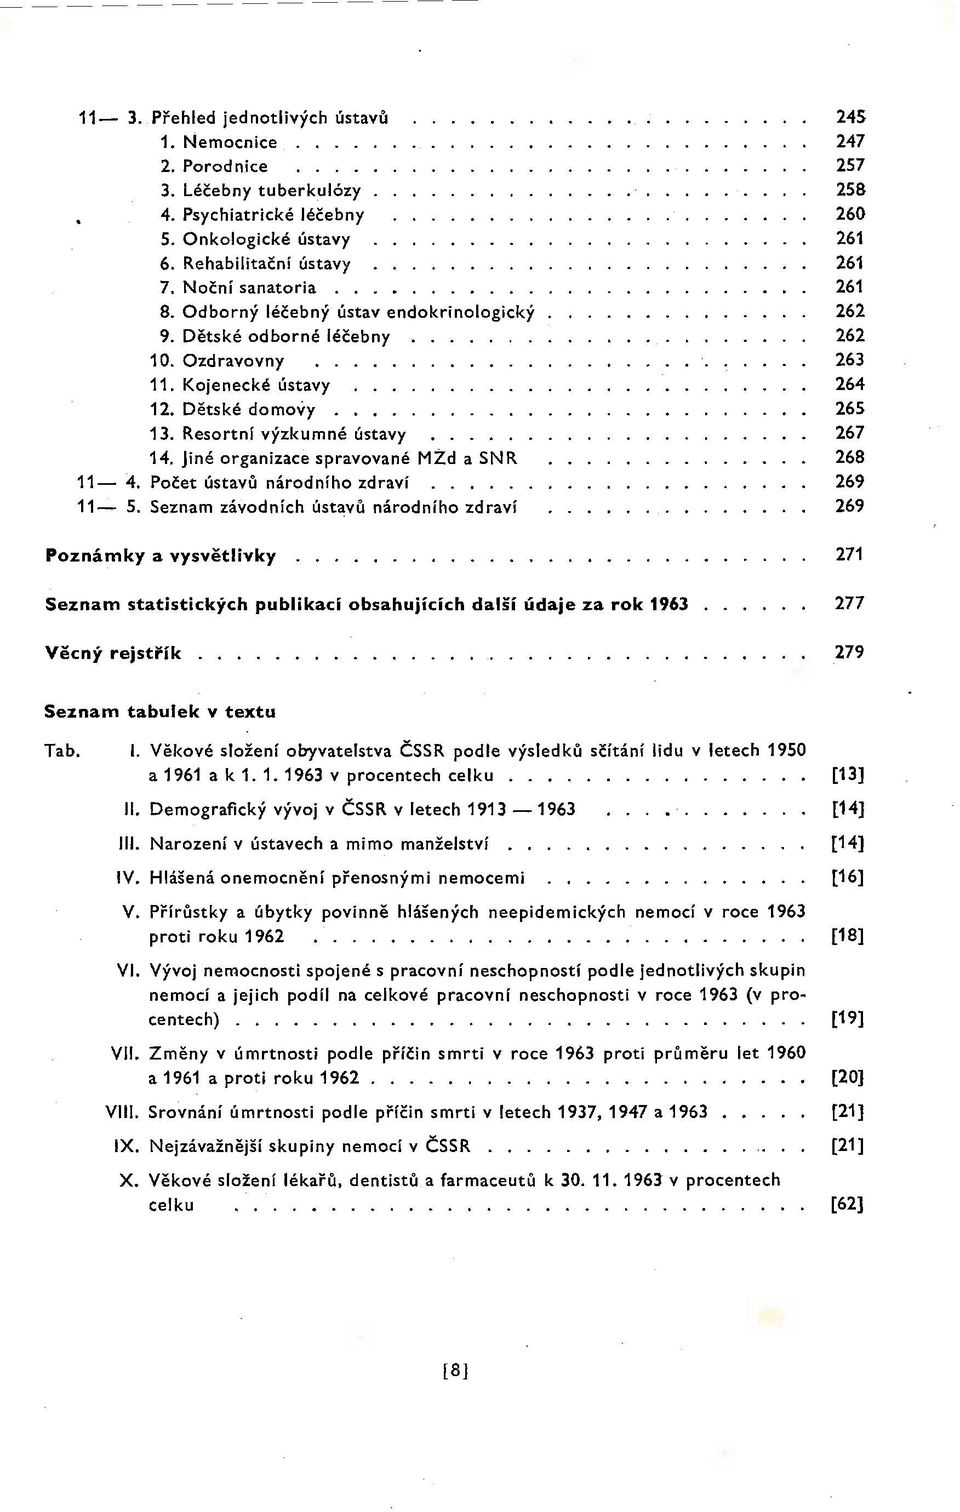 Počet ústavů národního zdraví... 11-5. Seznam závodních úst~vů národního zdraví Poznámky a vysvětlivky.... Seznam statistických publikací obsahujících další údaje za rok 1963 Věcný rejstřík.